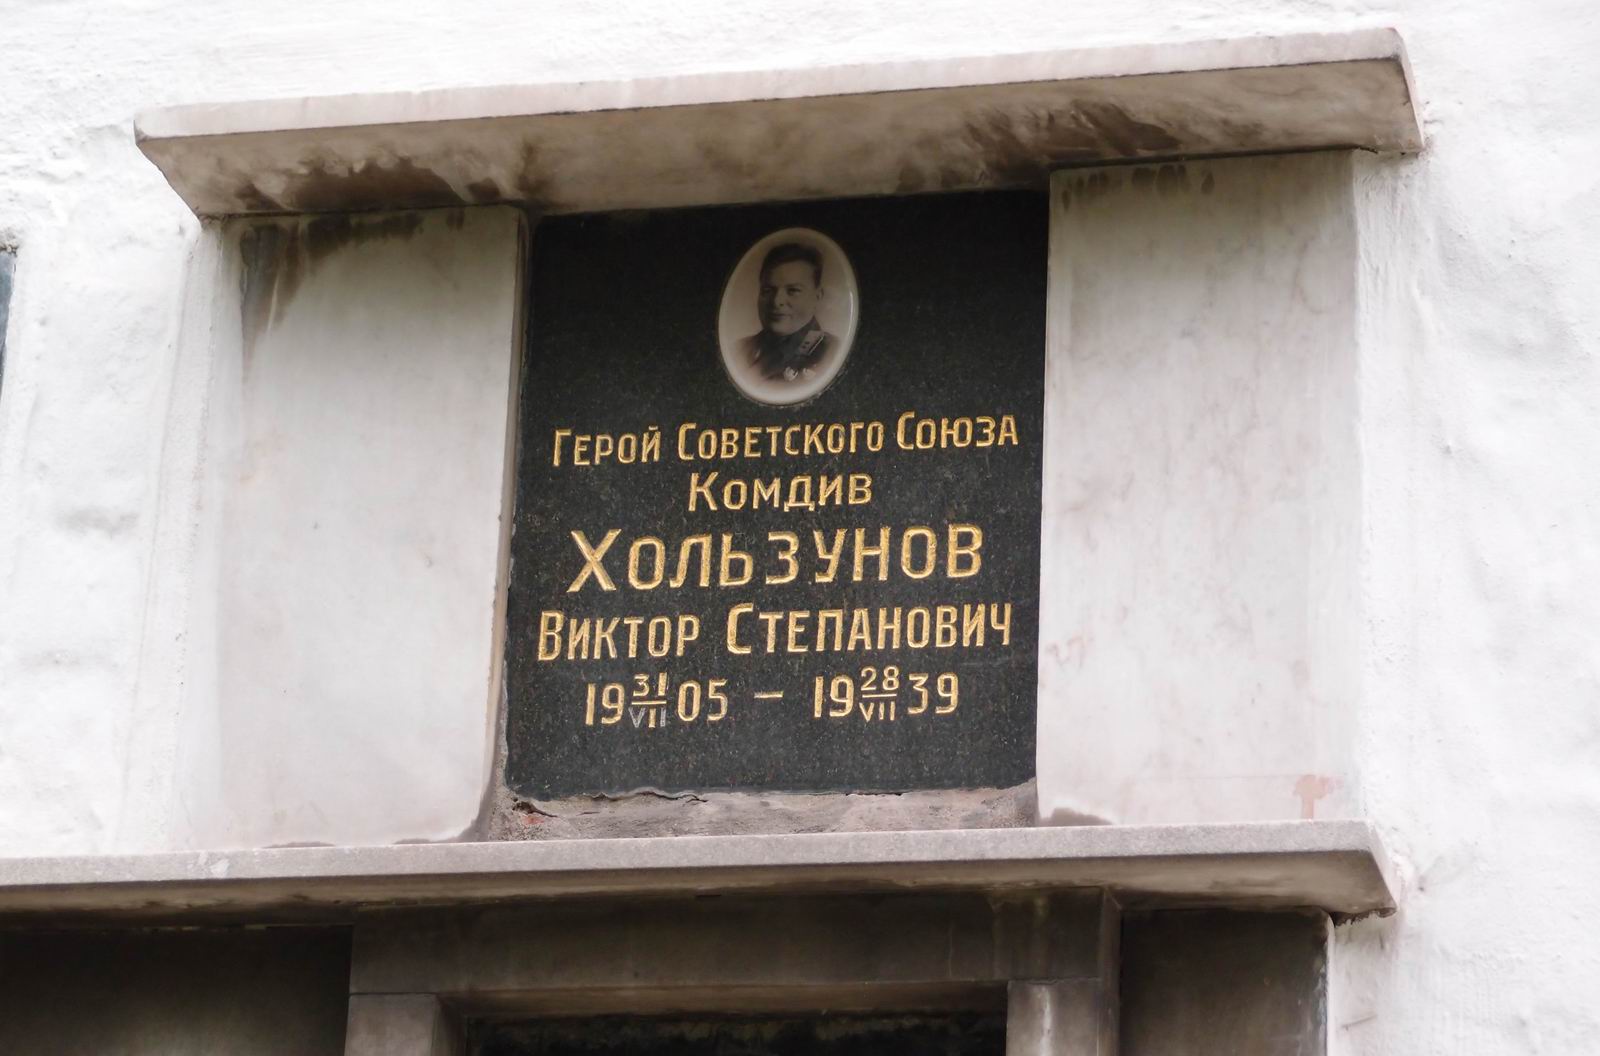 Плита на нише Хользунова В.С. (1905–1939), на Новодевичьем кладбище (колумбарий [5]–14–1). Нажмите левую кнопку мыши чтобы увидеть вариант до 2015.